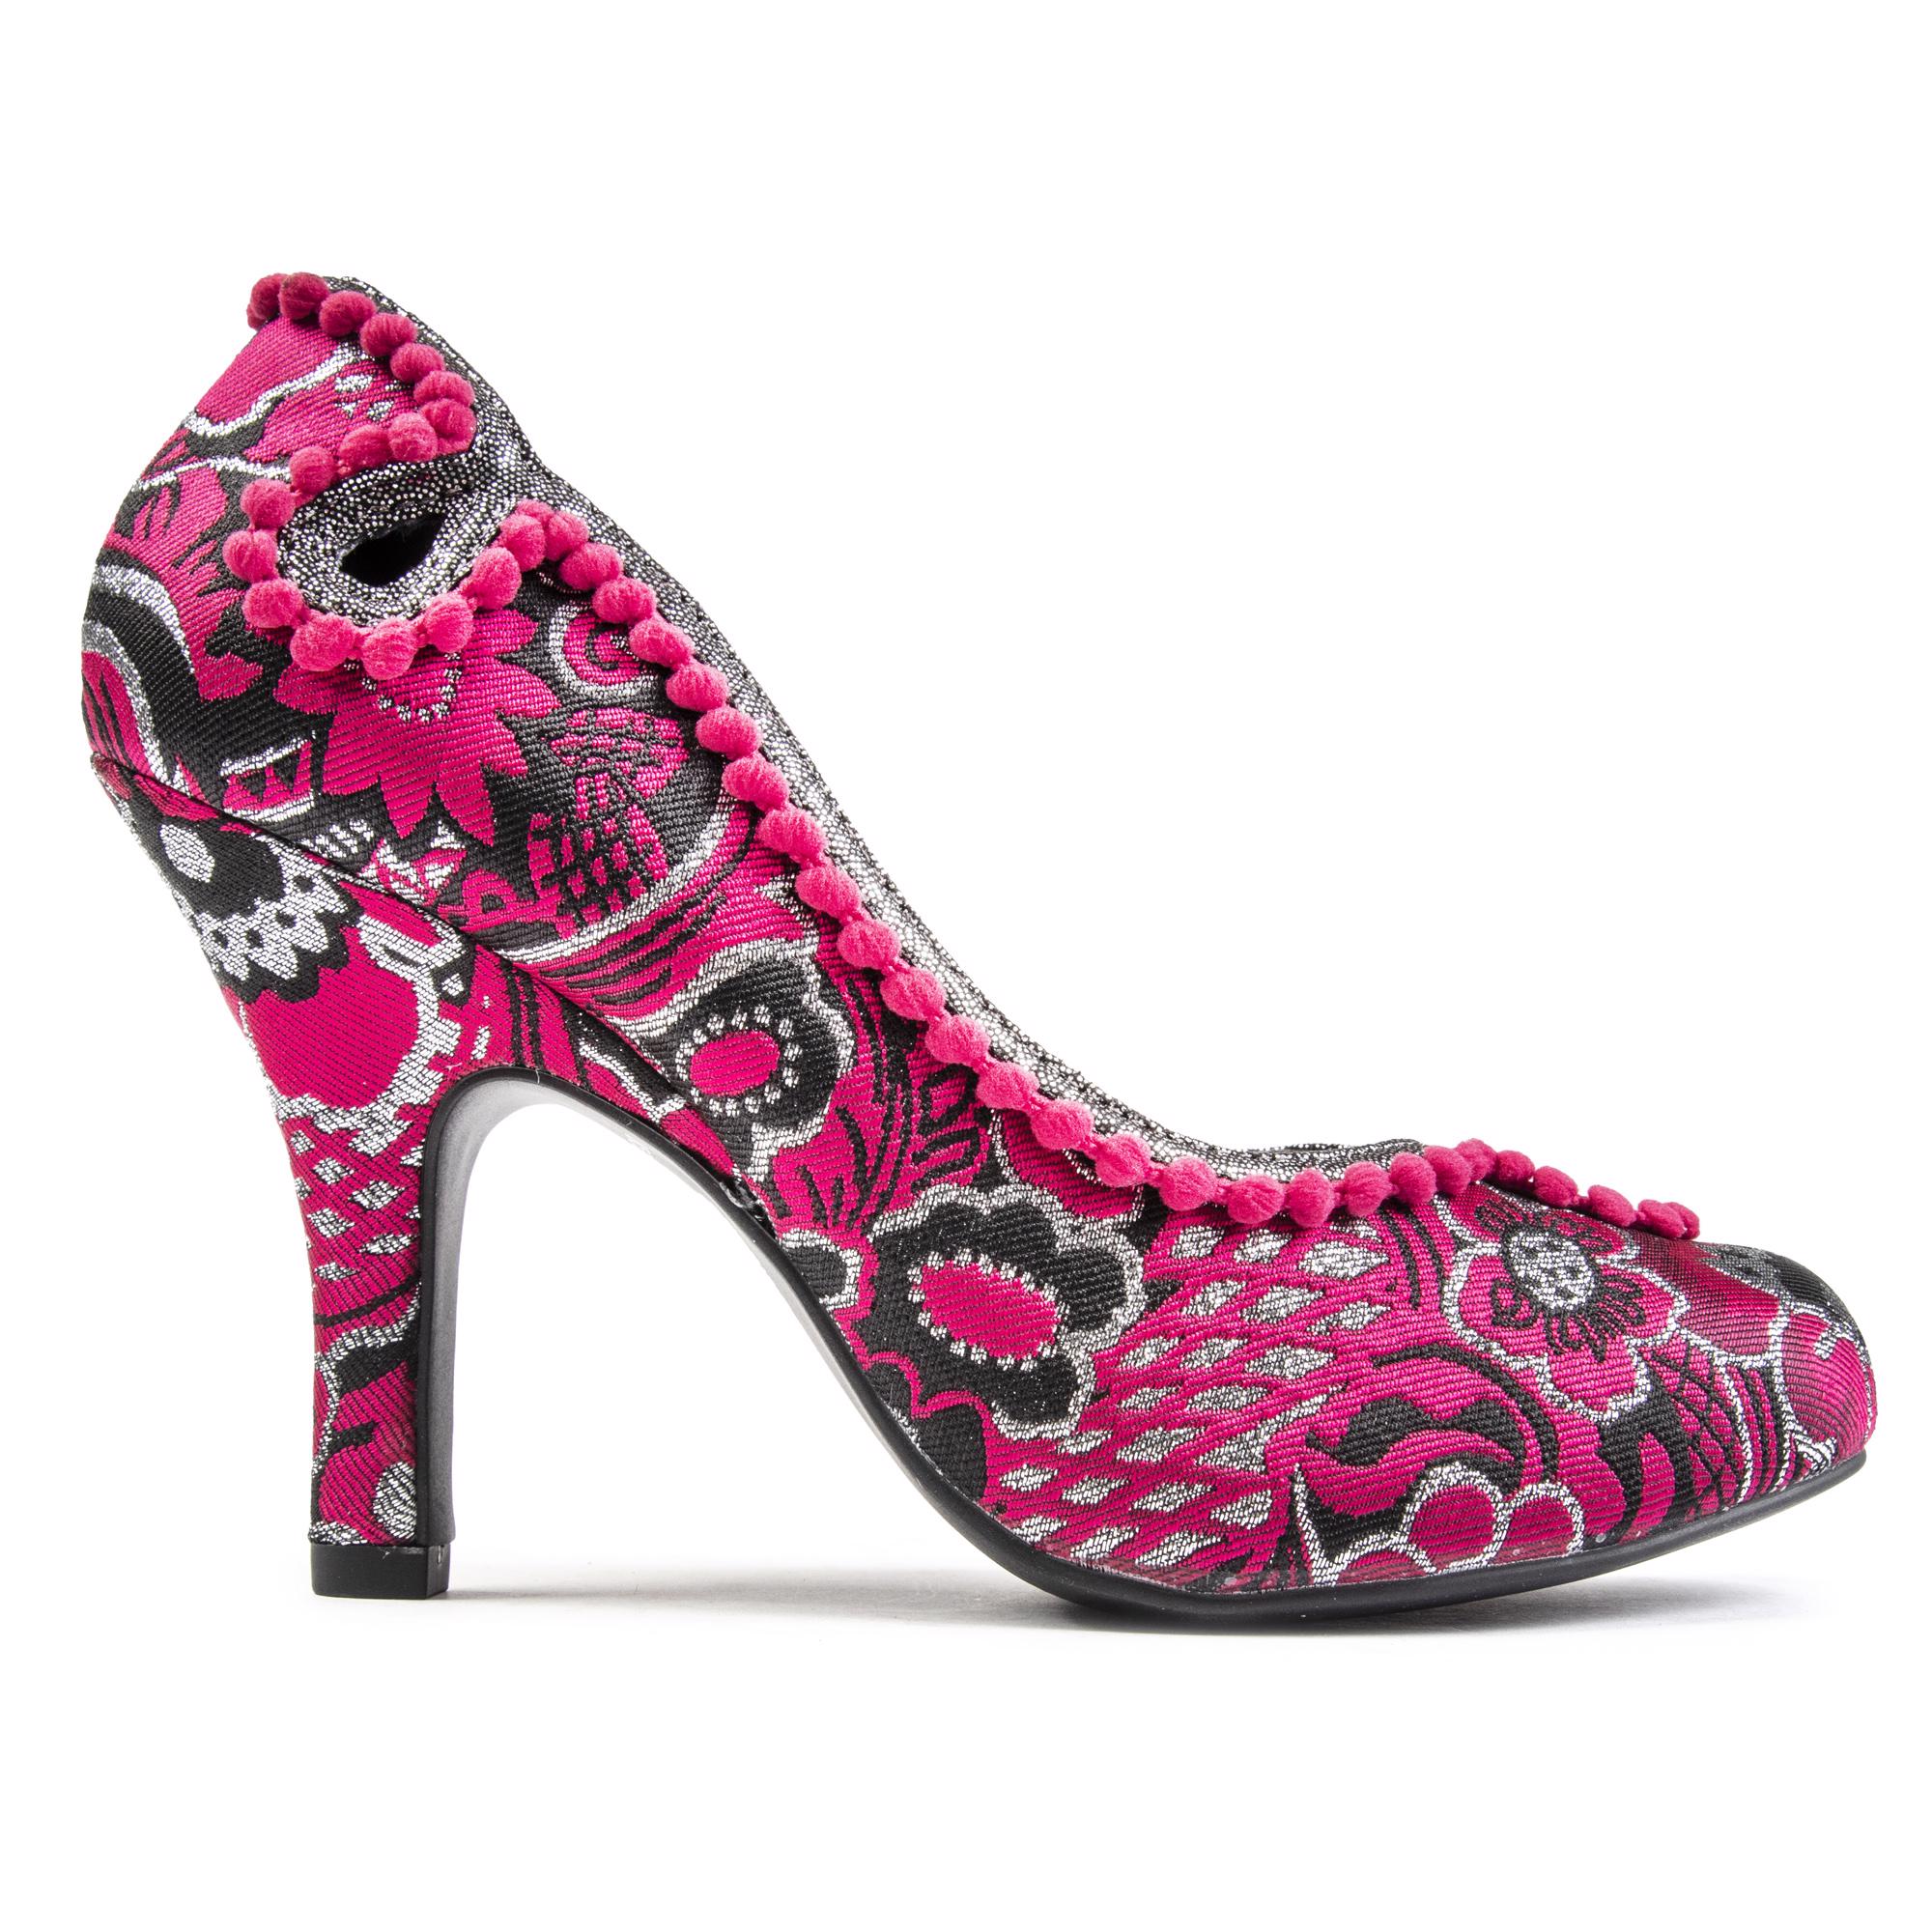 RUBY SHOO Womens Miley Heels Shoes Pink